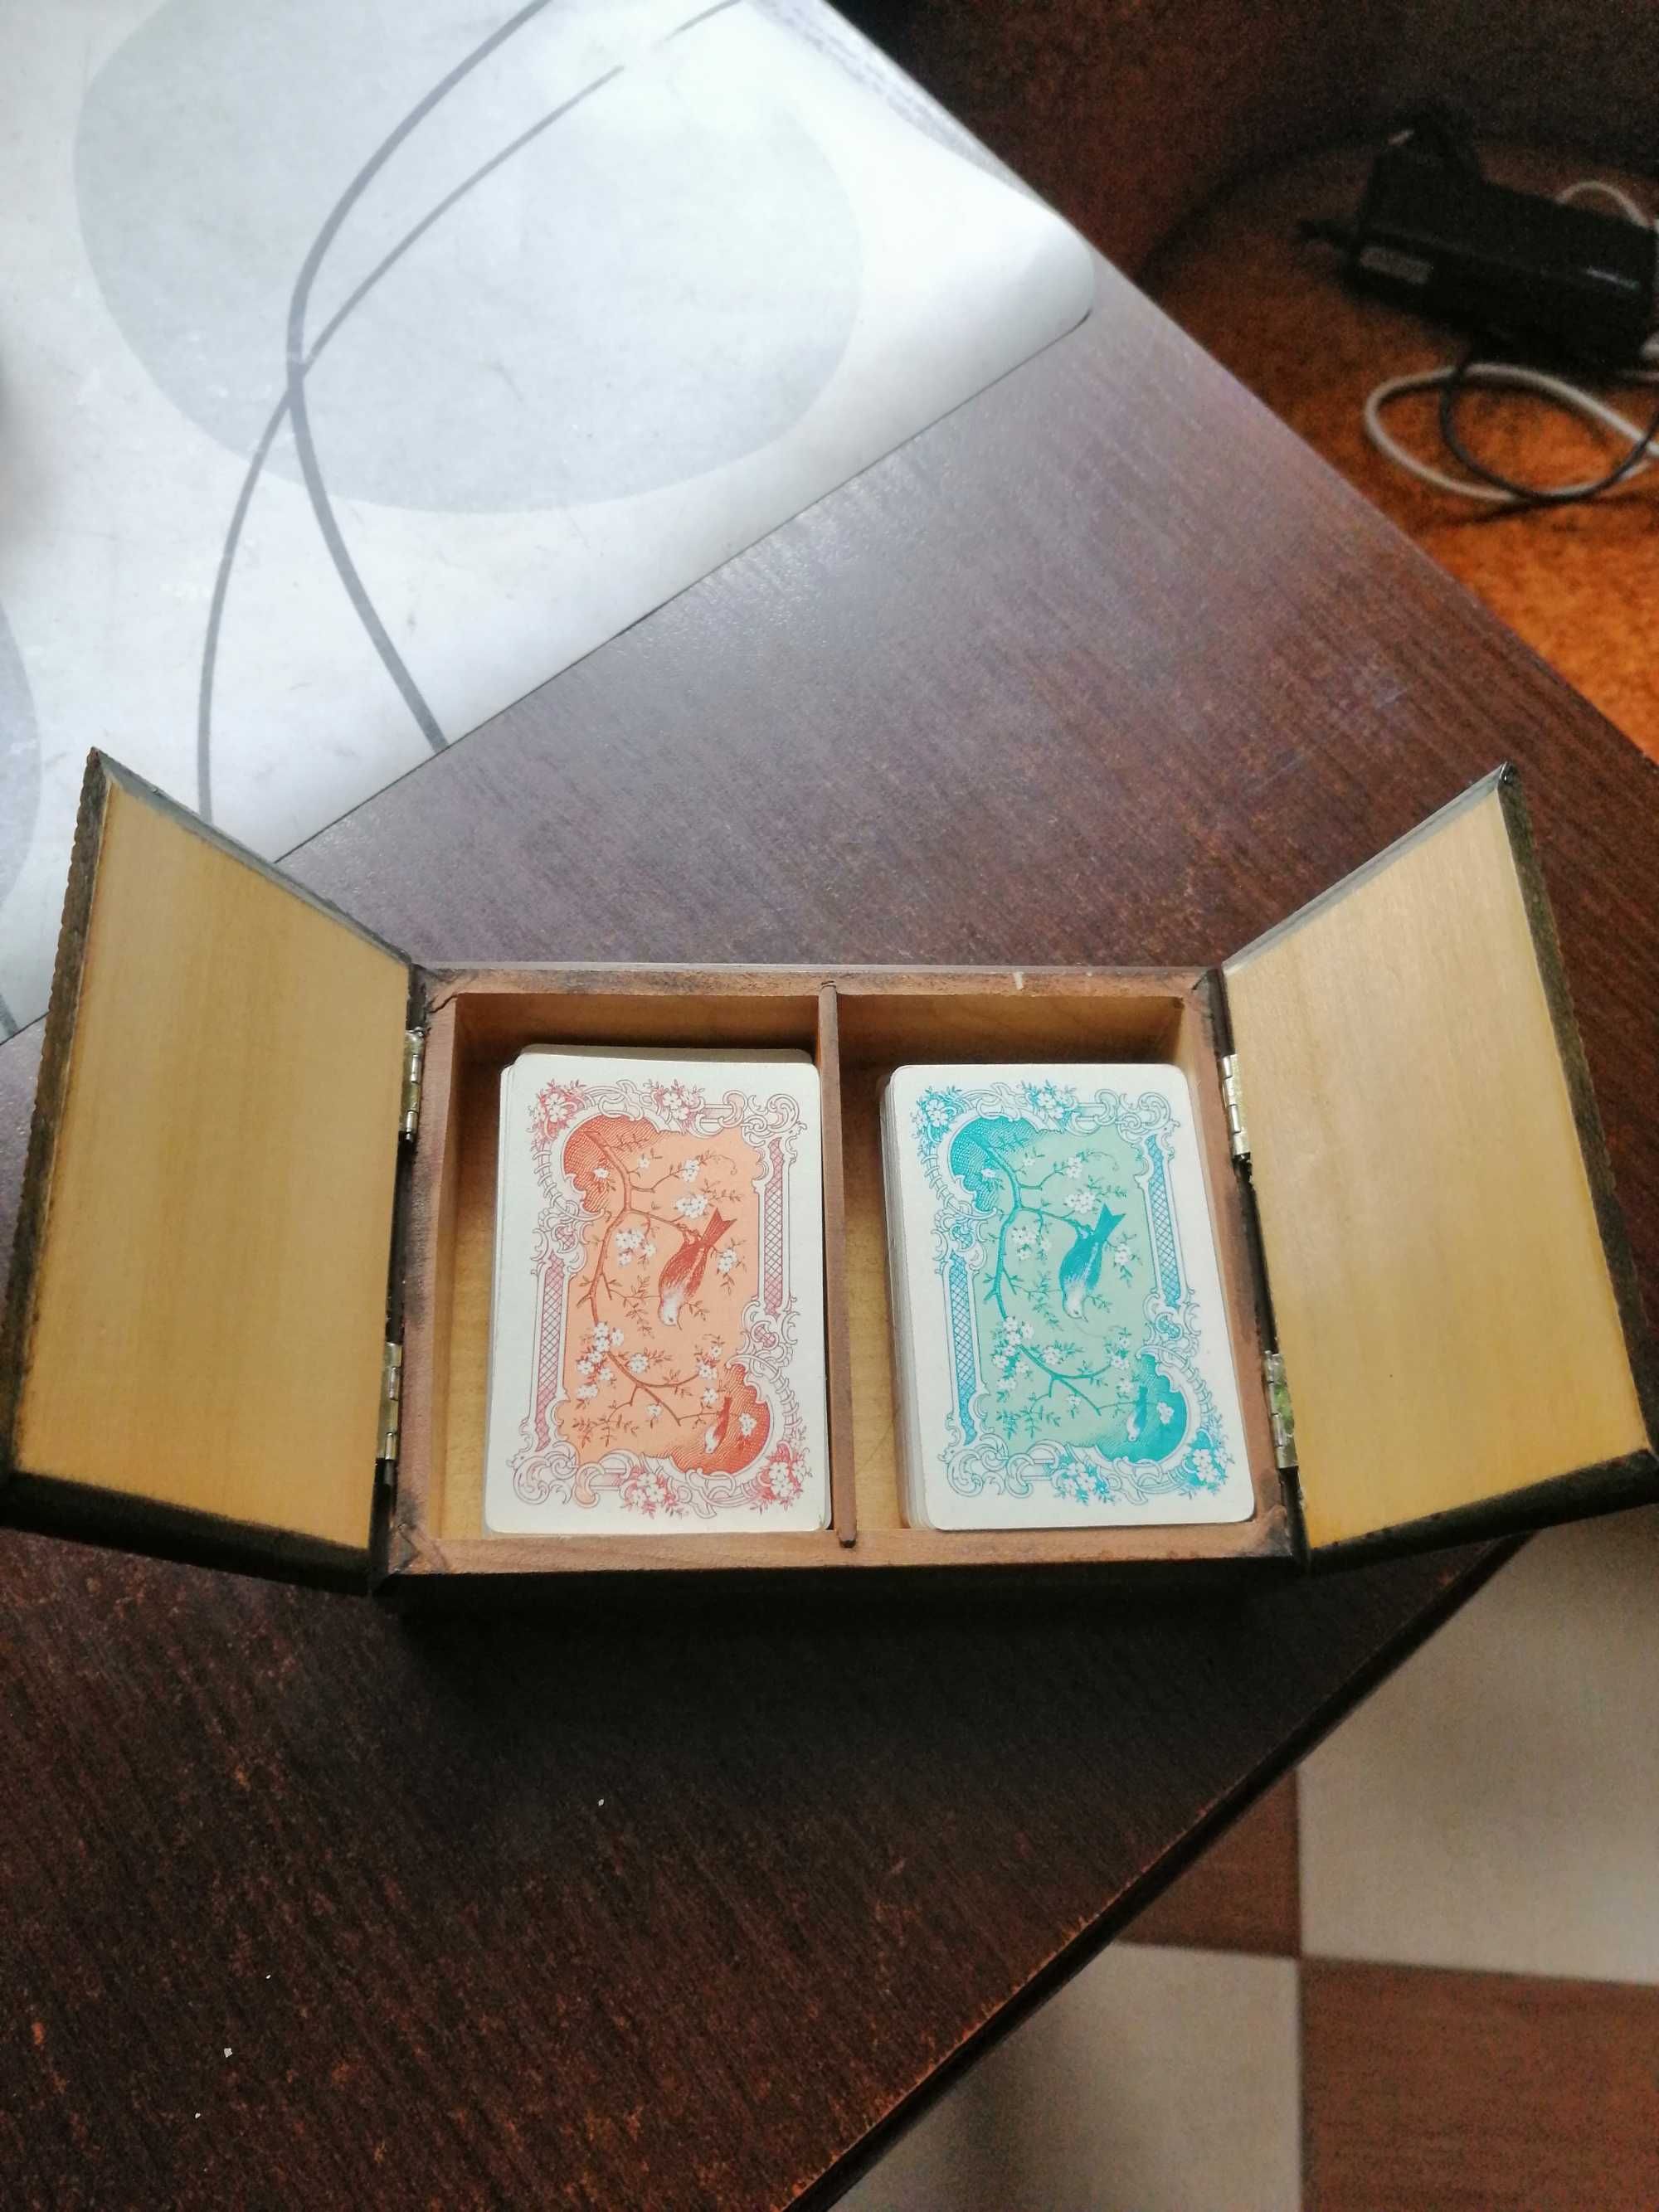 karty do gry w drewnianym pudełku małe ,pasjans itp